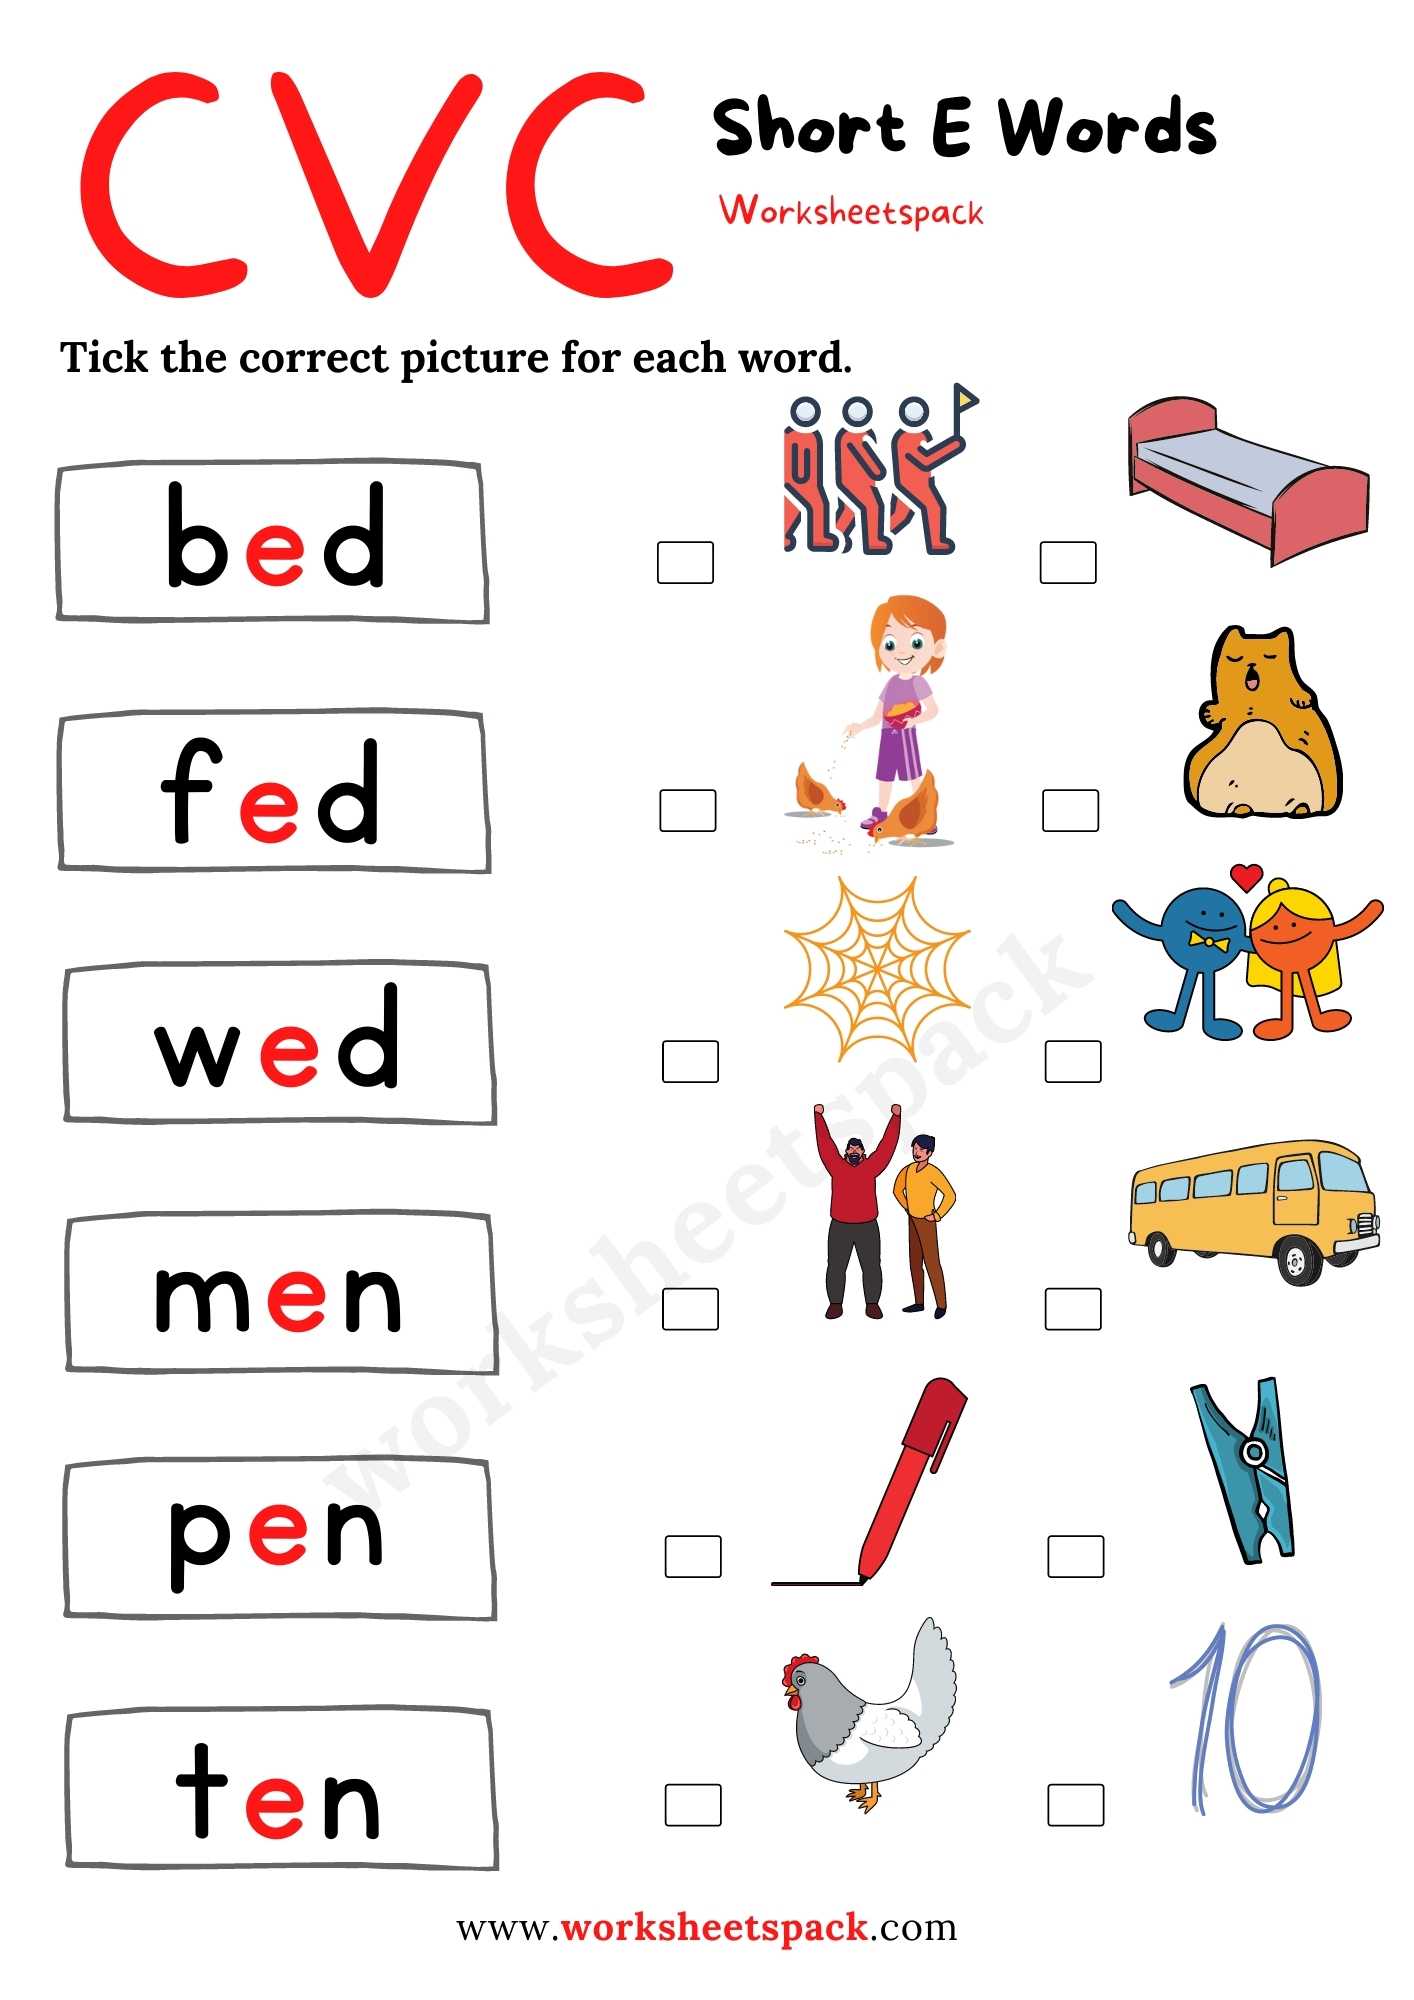 short-e-worksheets-for-kindergarten-worksheetspack